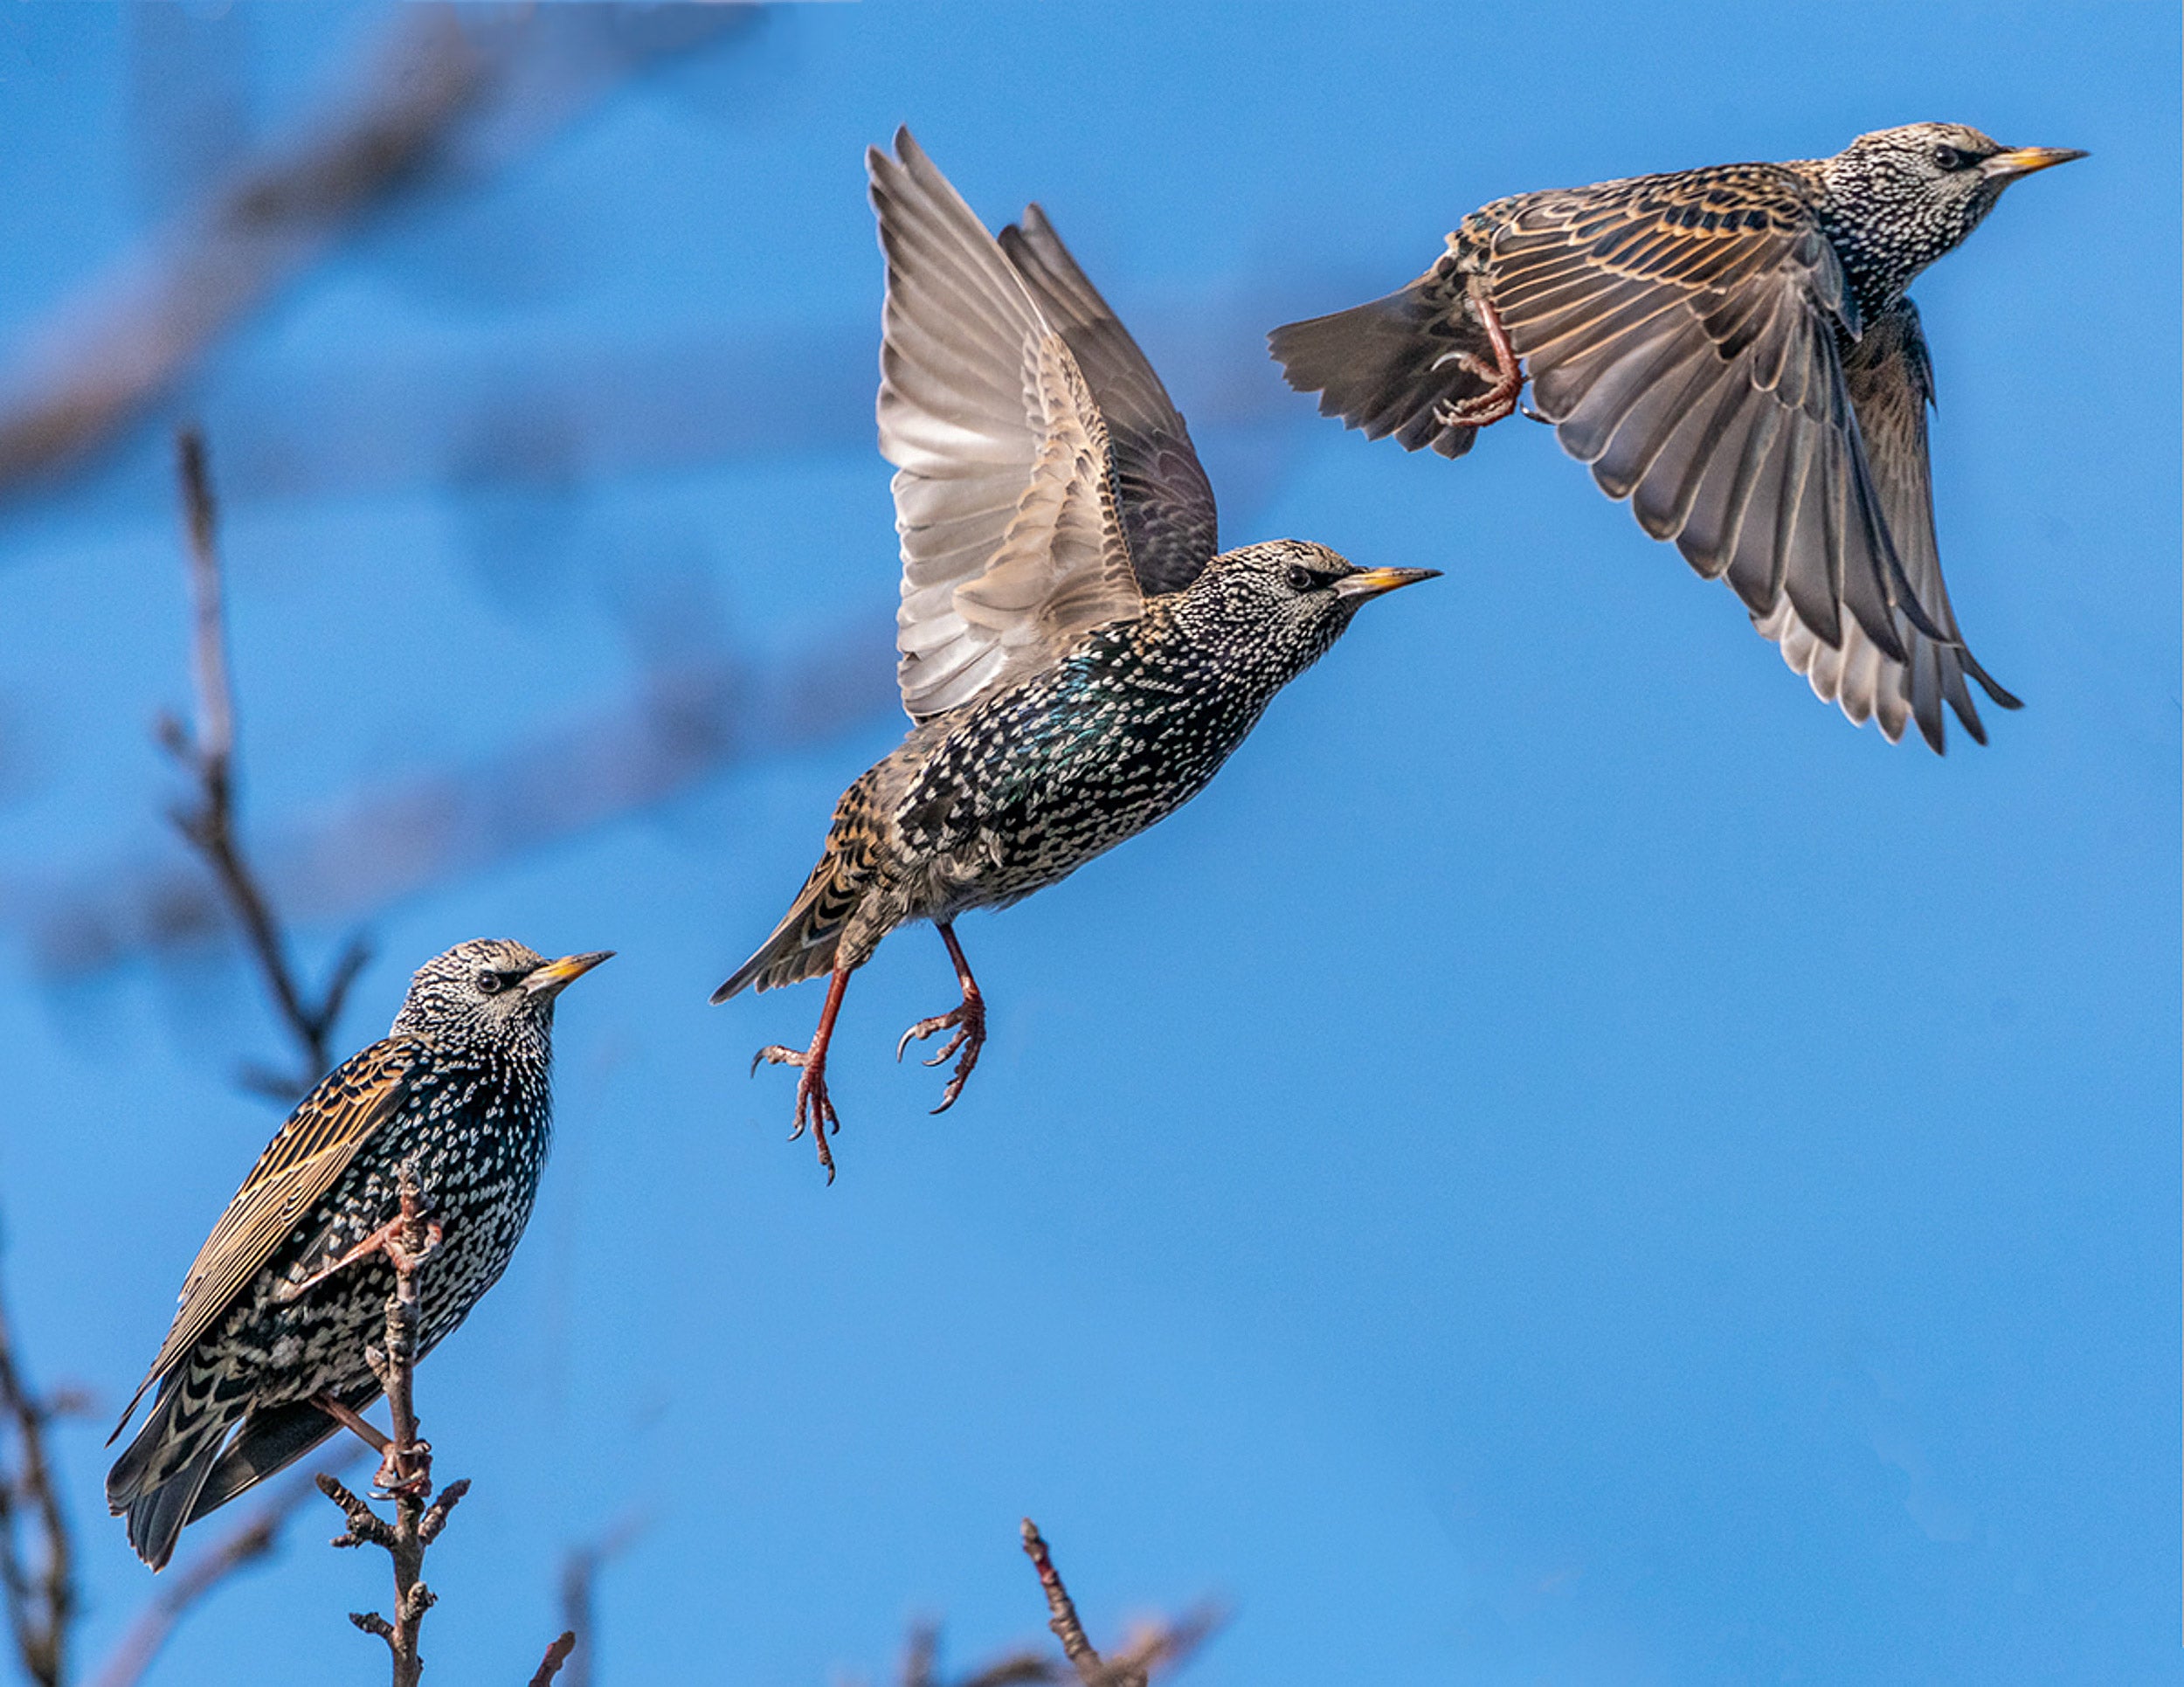 European starling in flight.